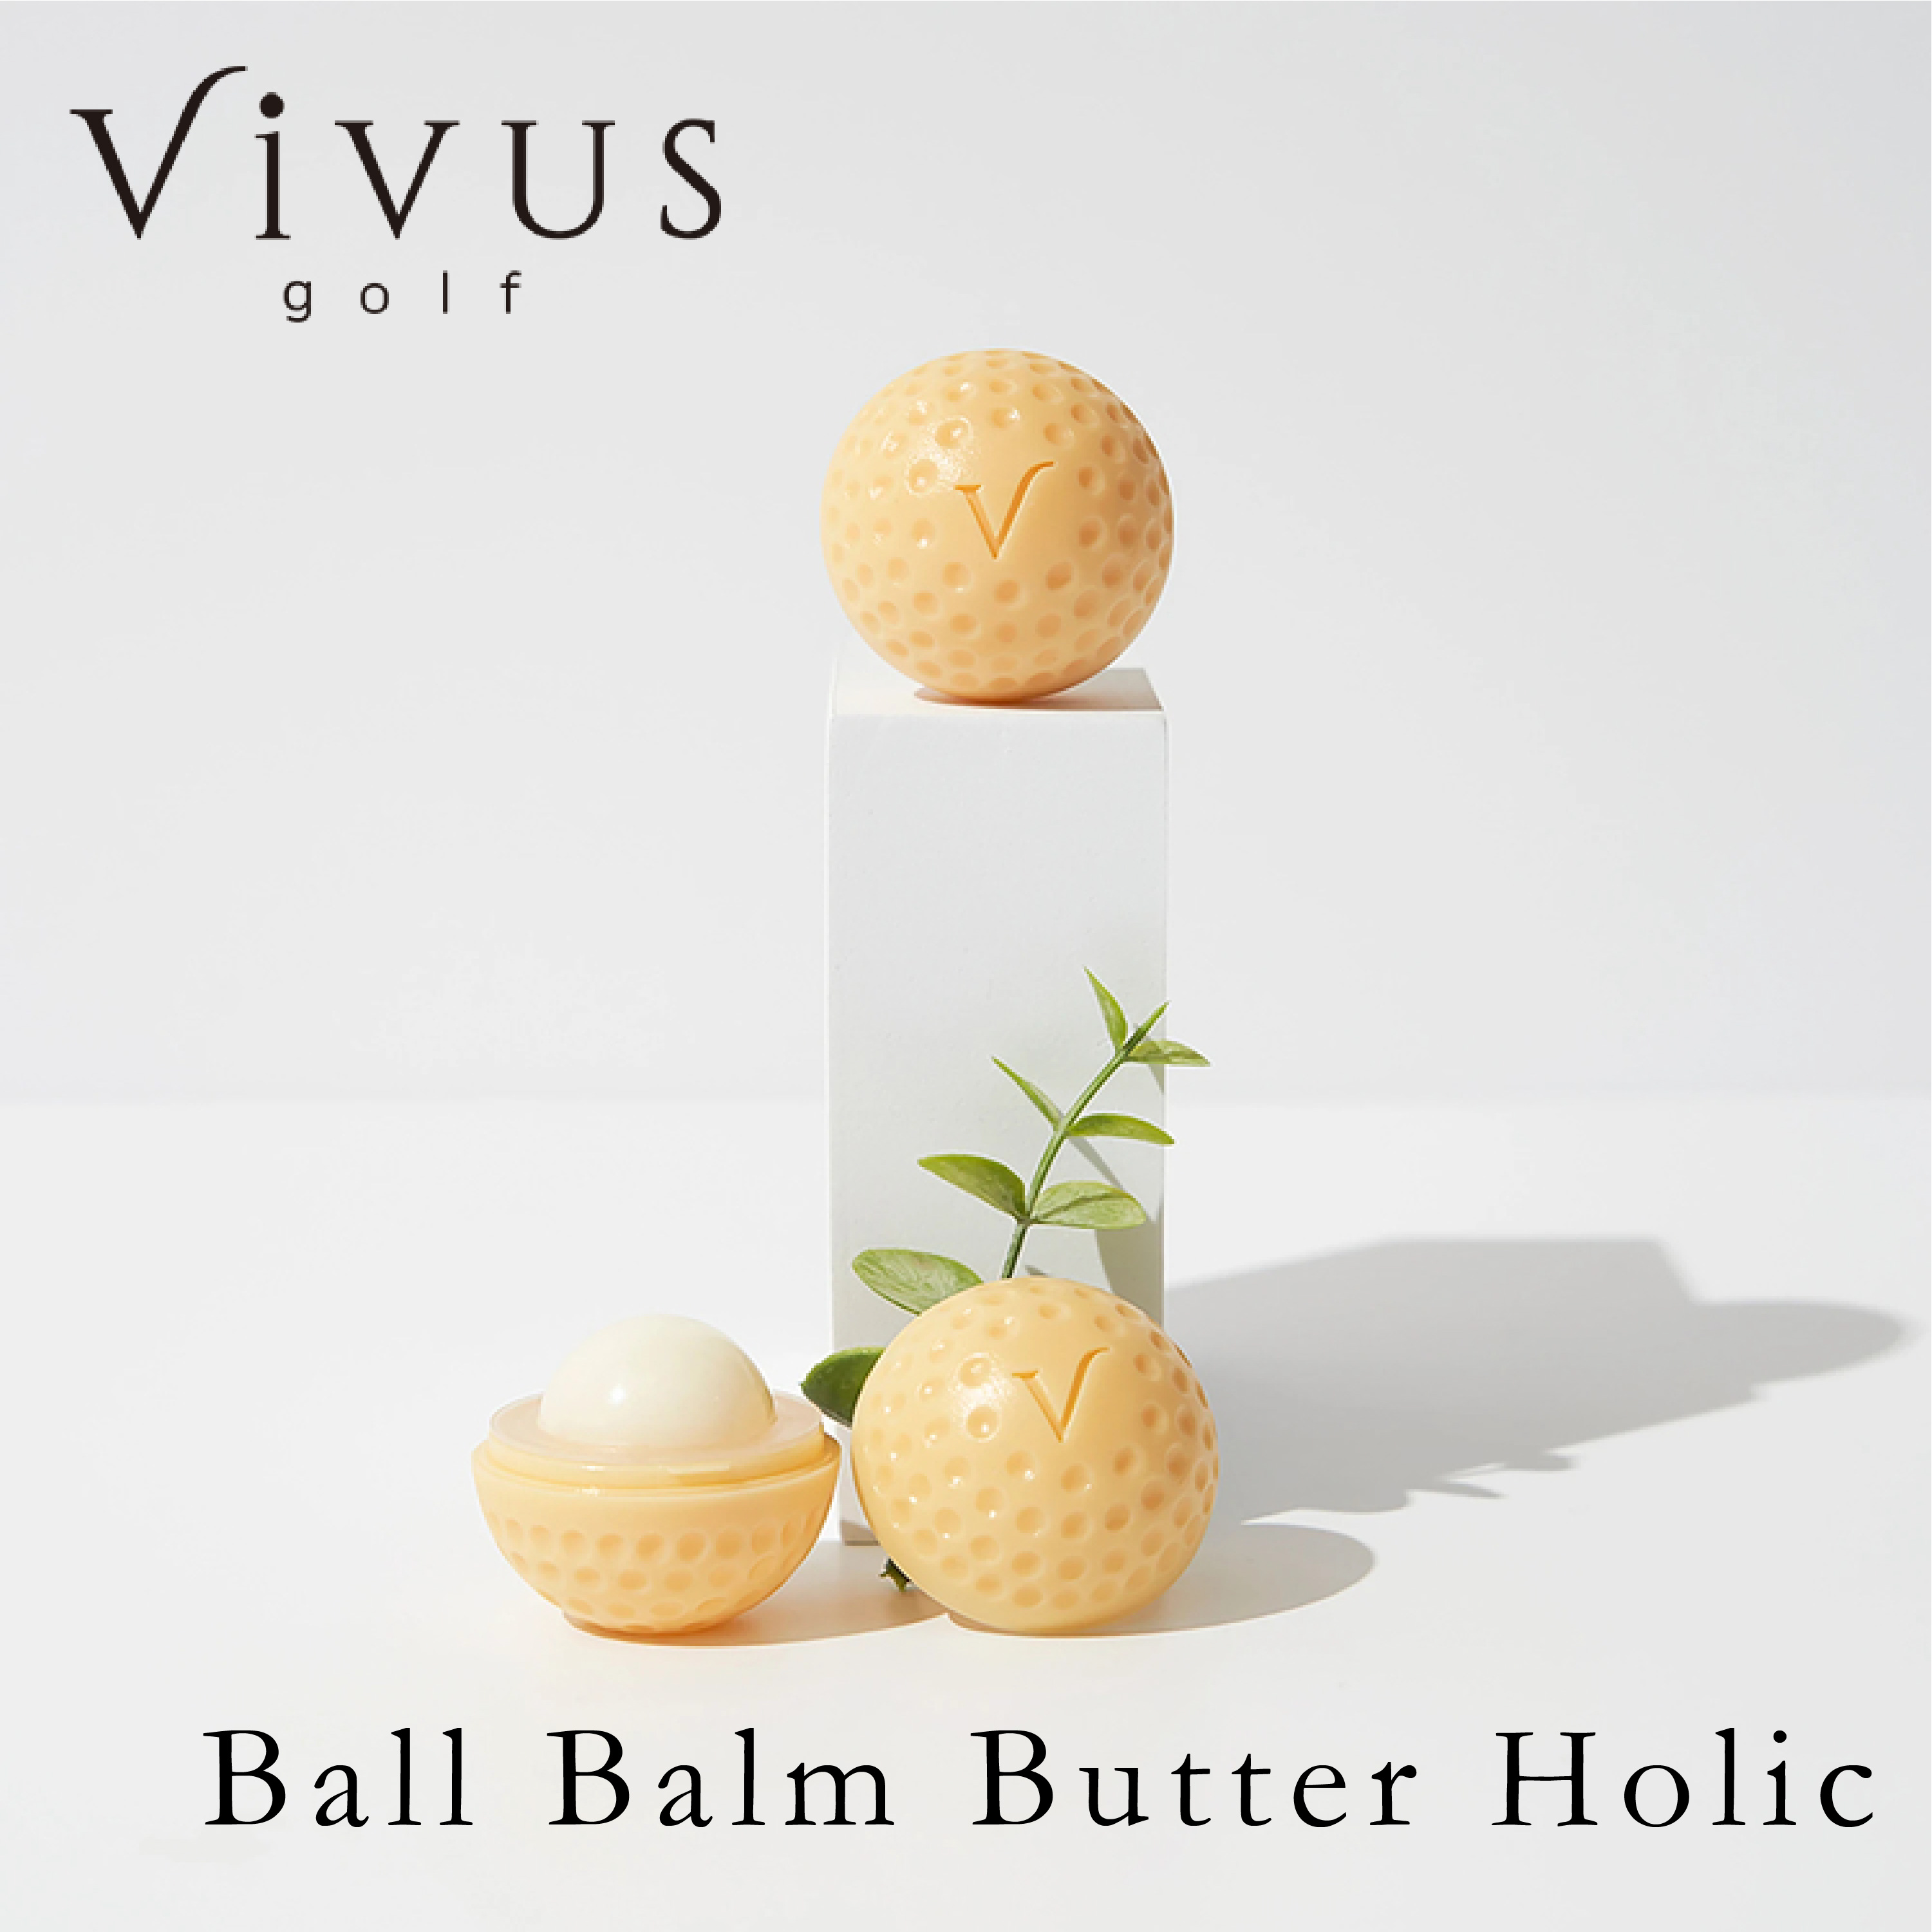 VIVUS golf Ball Balm Butter Holic VI5MNJ02-020